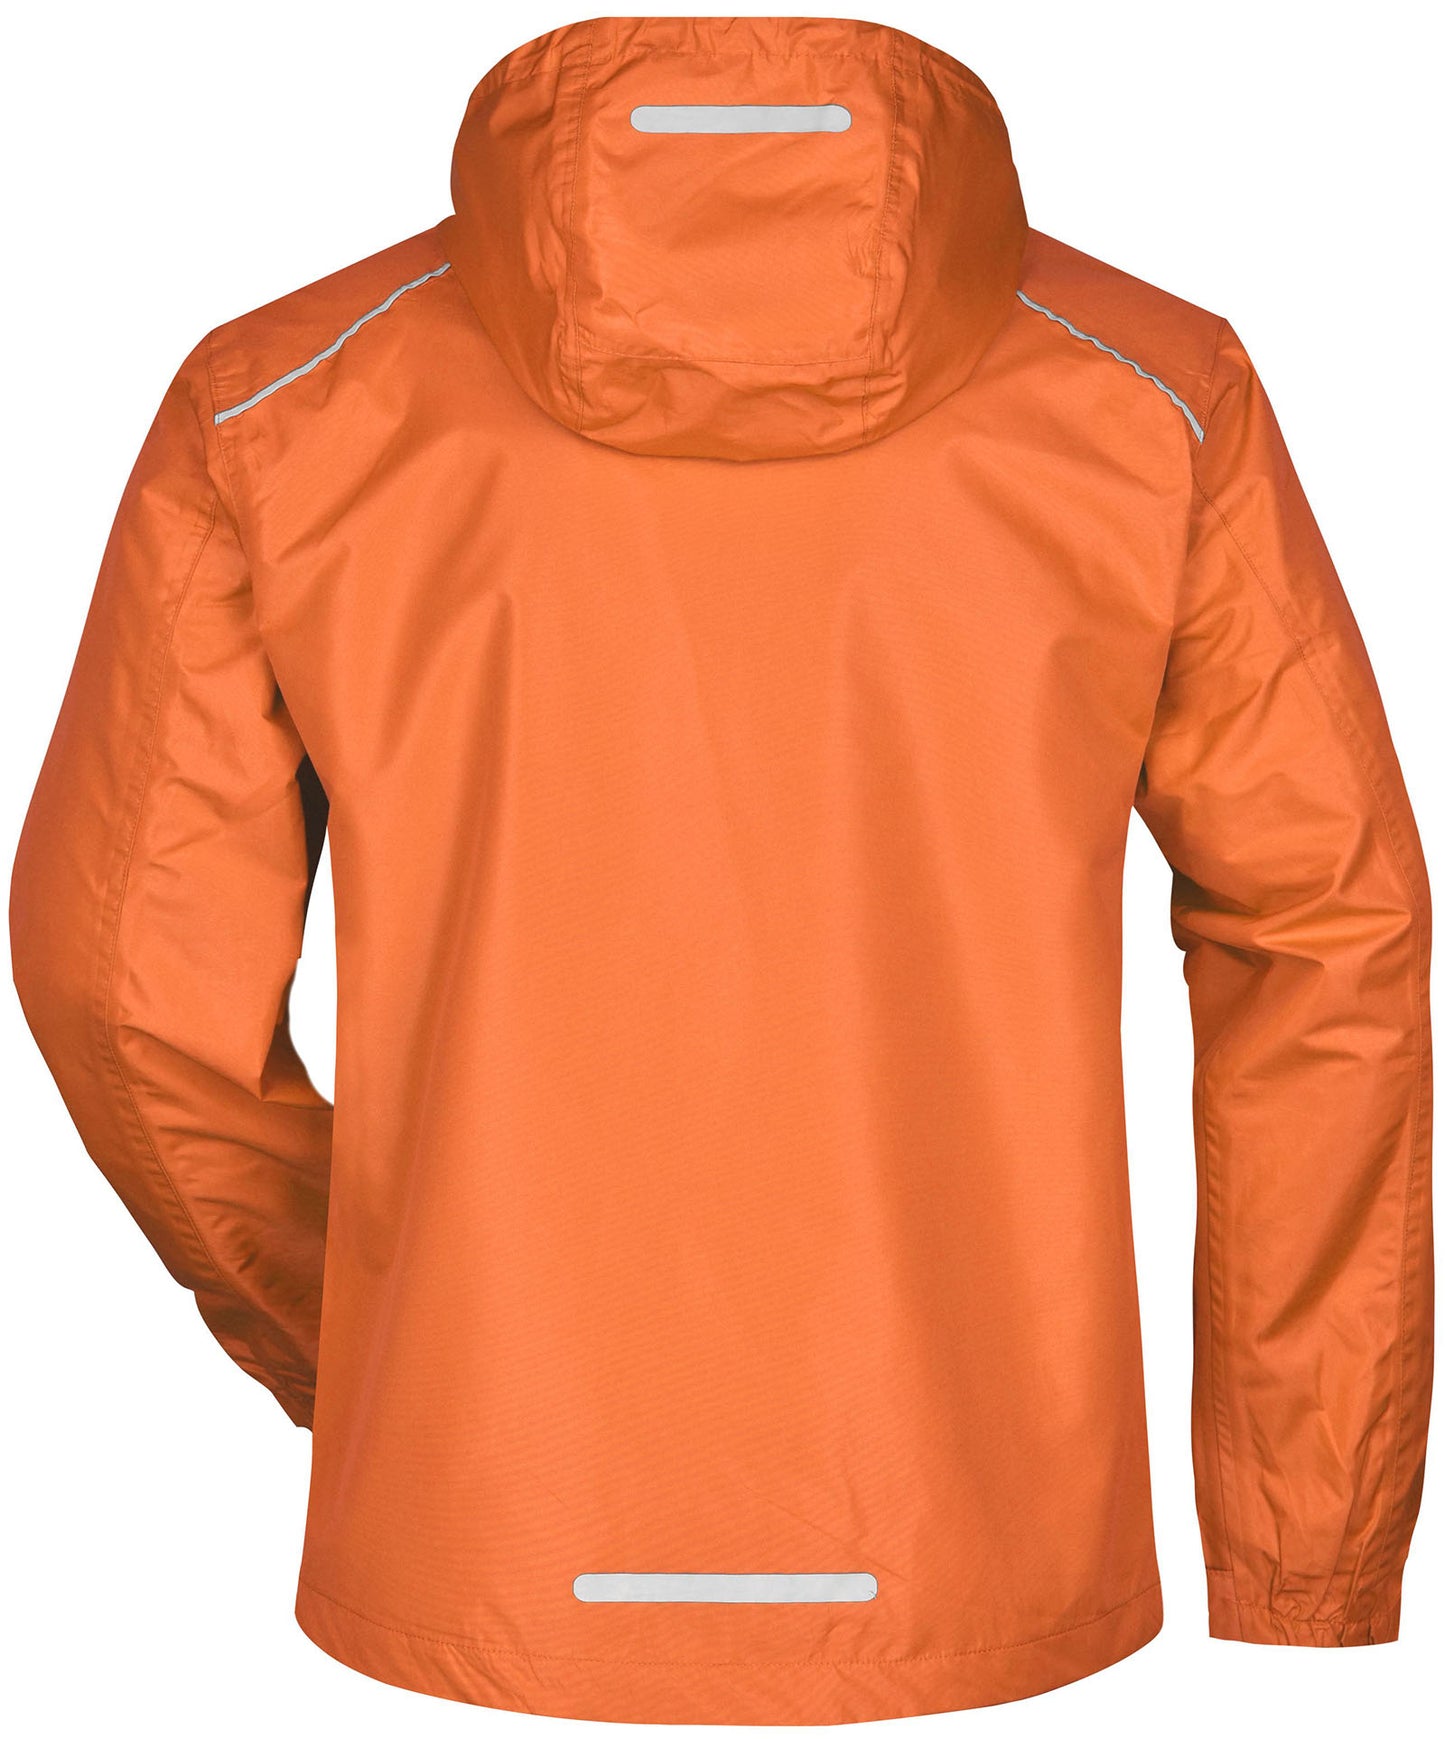 JAN 1118/10A ― Windbreaker Rain Jacket - Orange / Carbon Grau